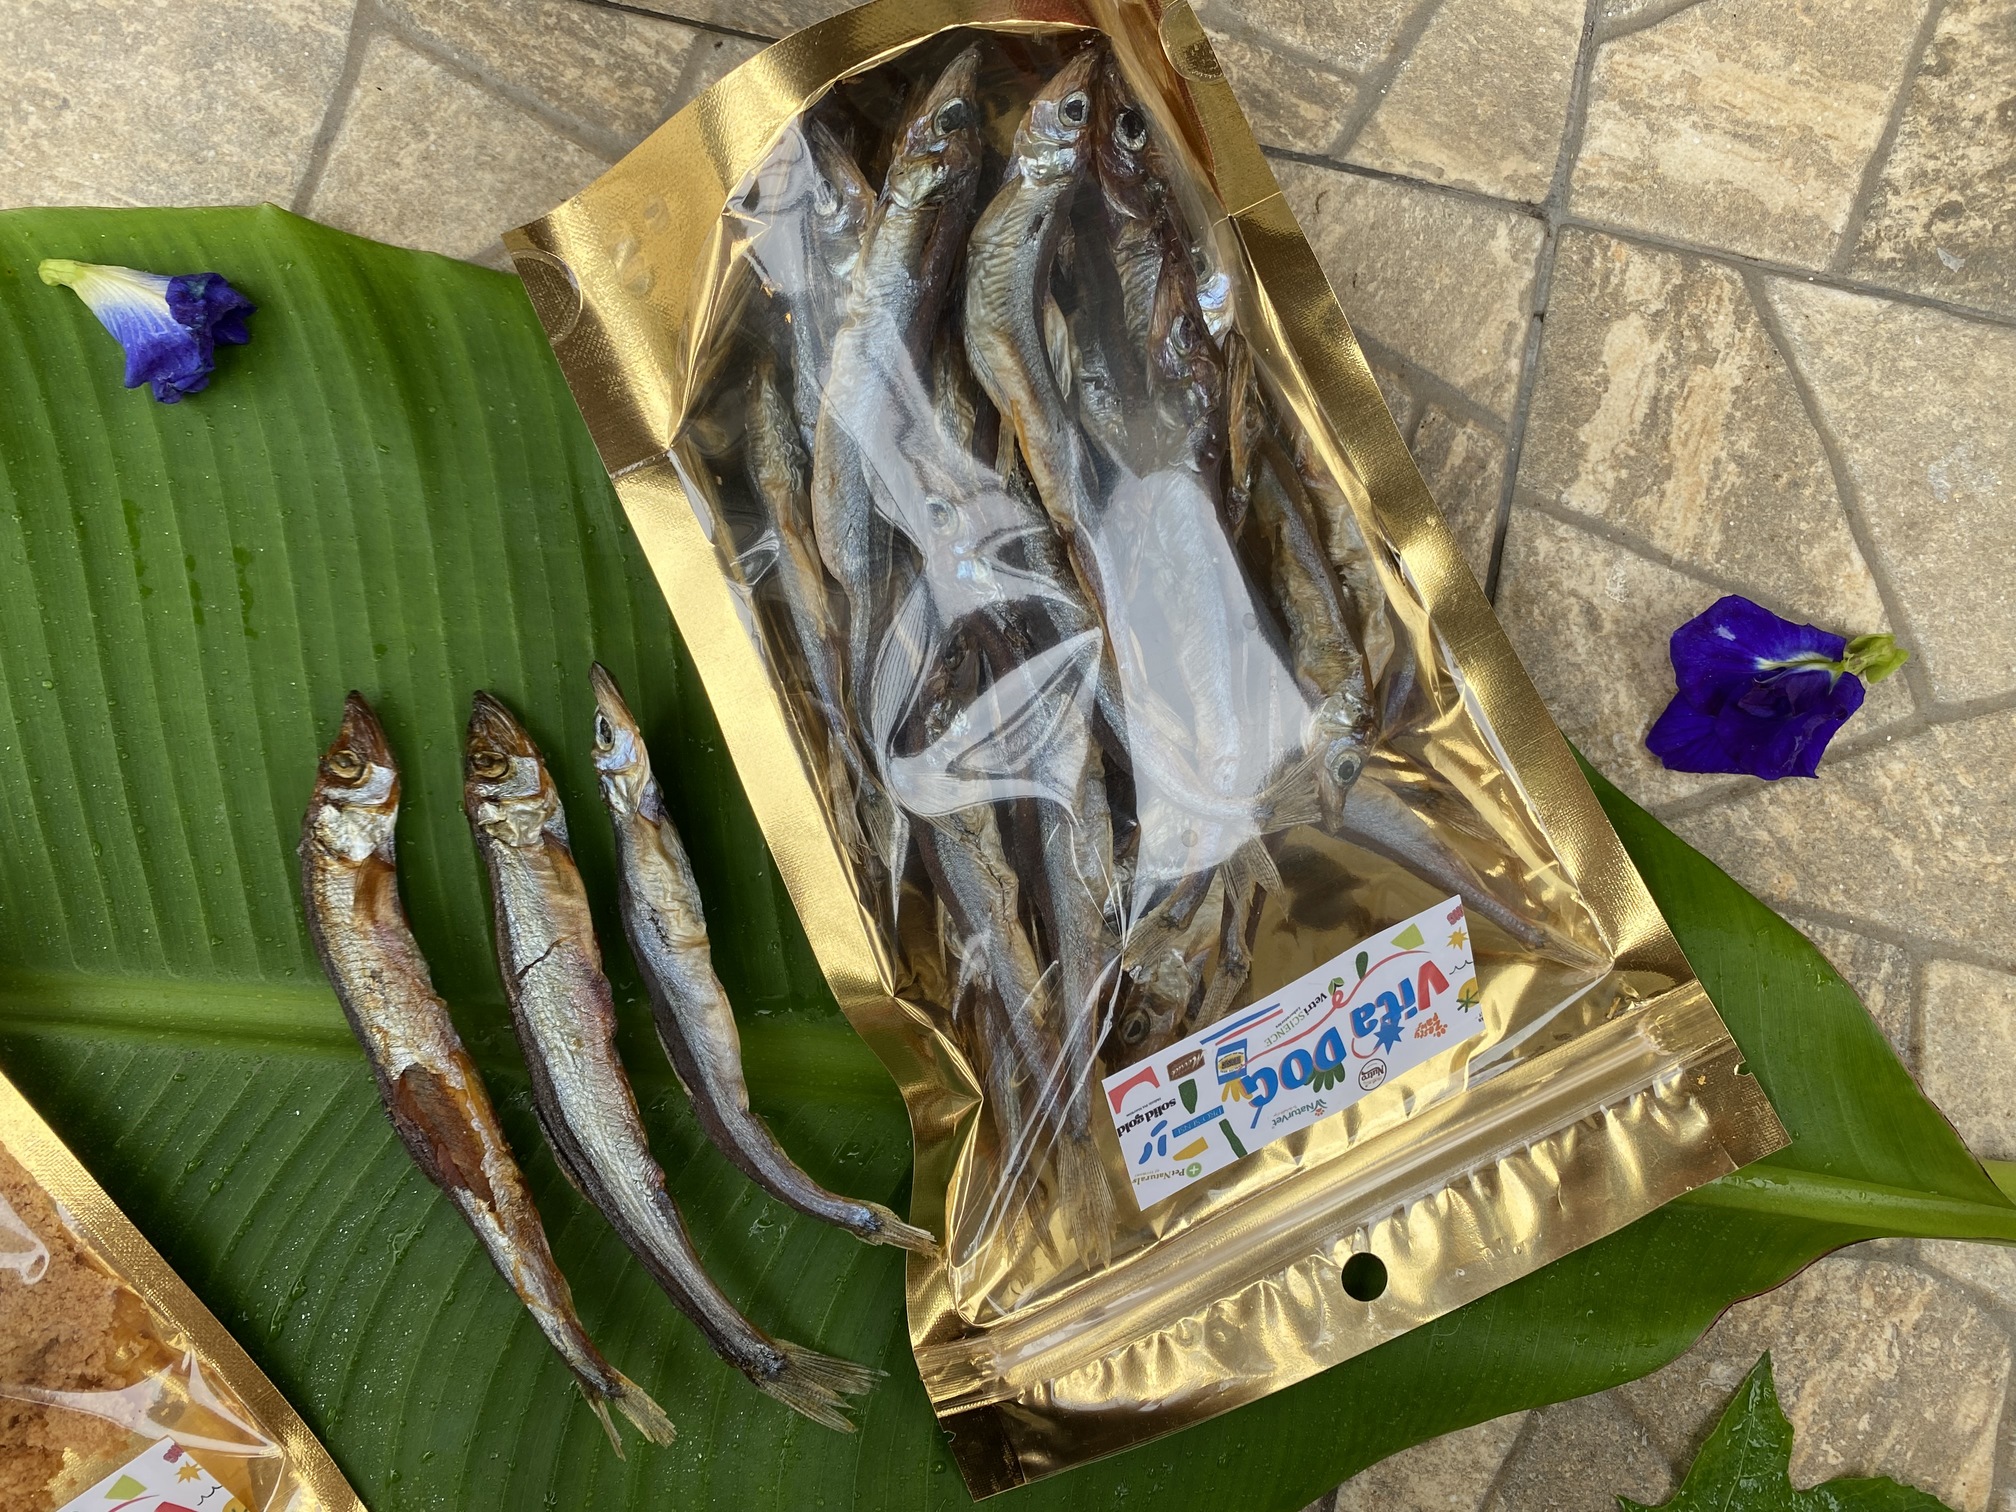 ปลาไข่ Shishamoชิชาโมะทั้งตัว ขนมหมาแมว เนื้อปลาไข่แท้ 100% เต็มๆถุงละ100g